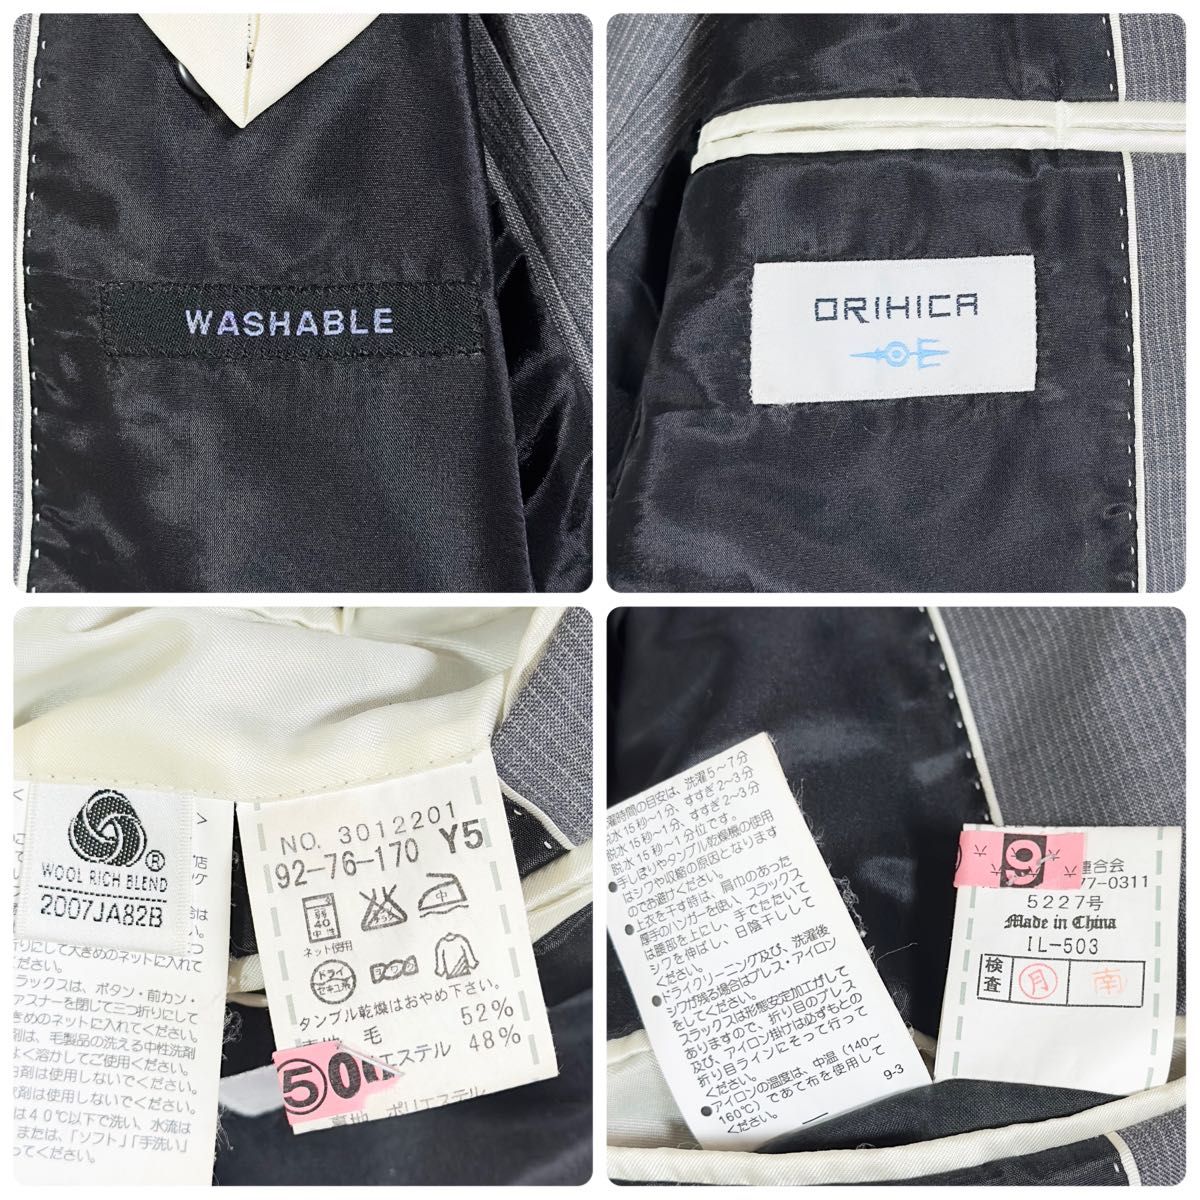 美品/ORIHICA/オリヒカ スーツ セットアップ ジャケット ストライプ ウォッシャブル グレー Y5 M位